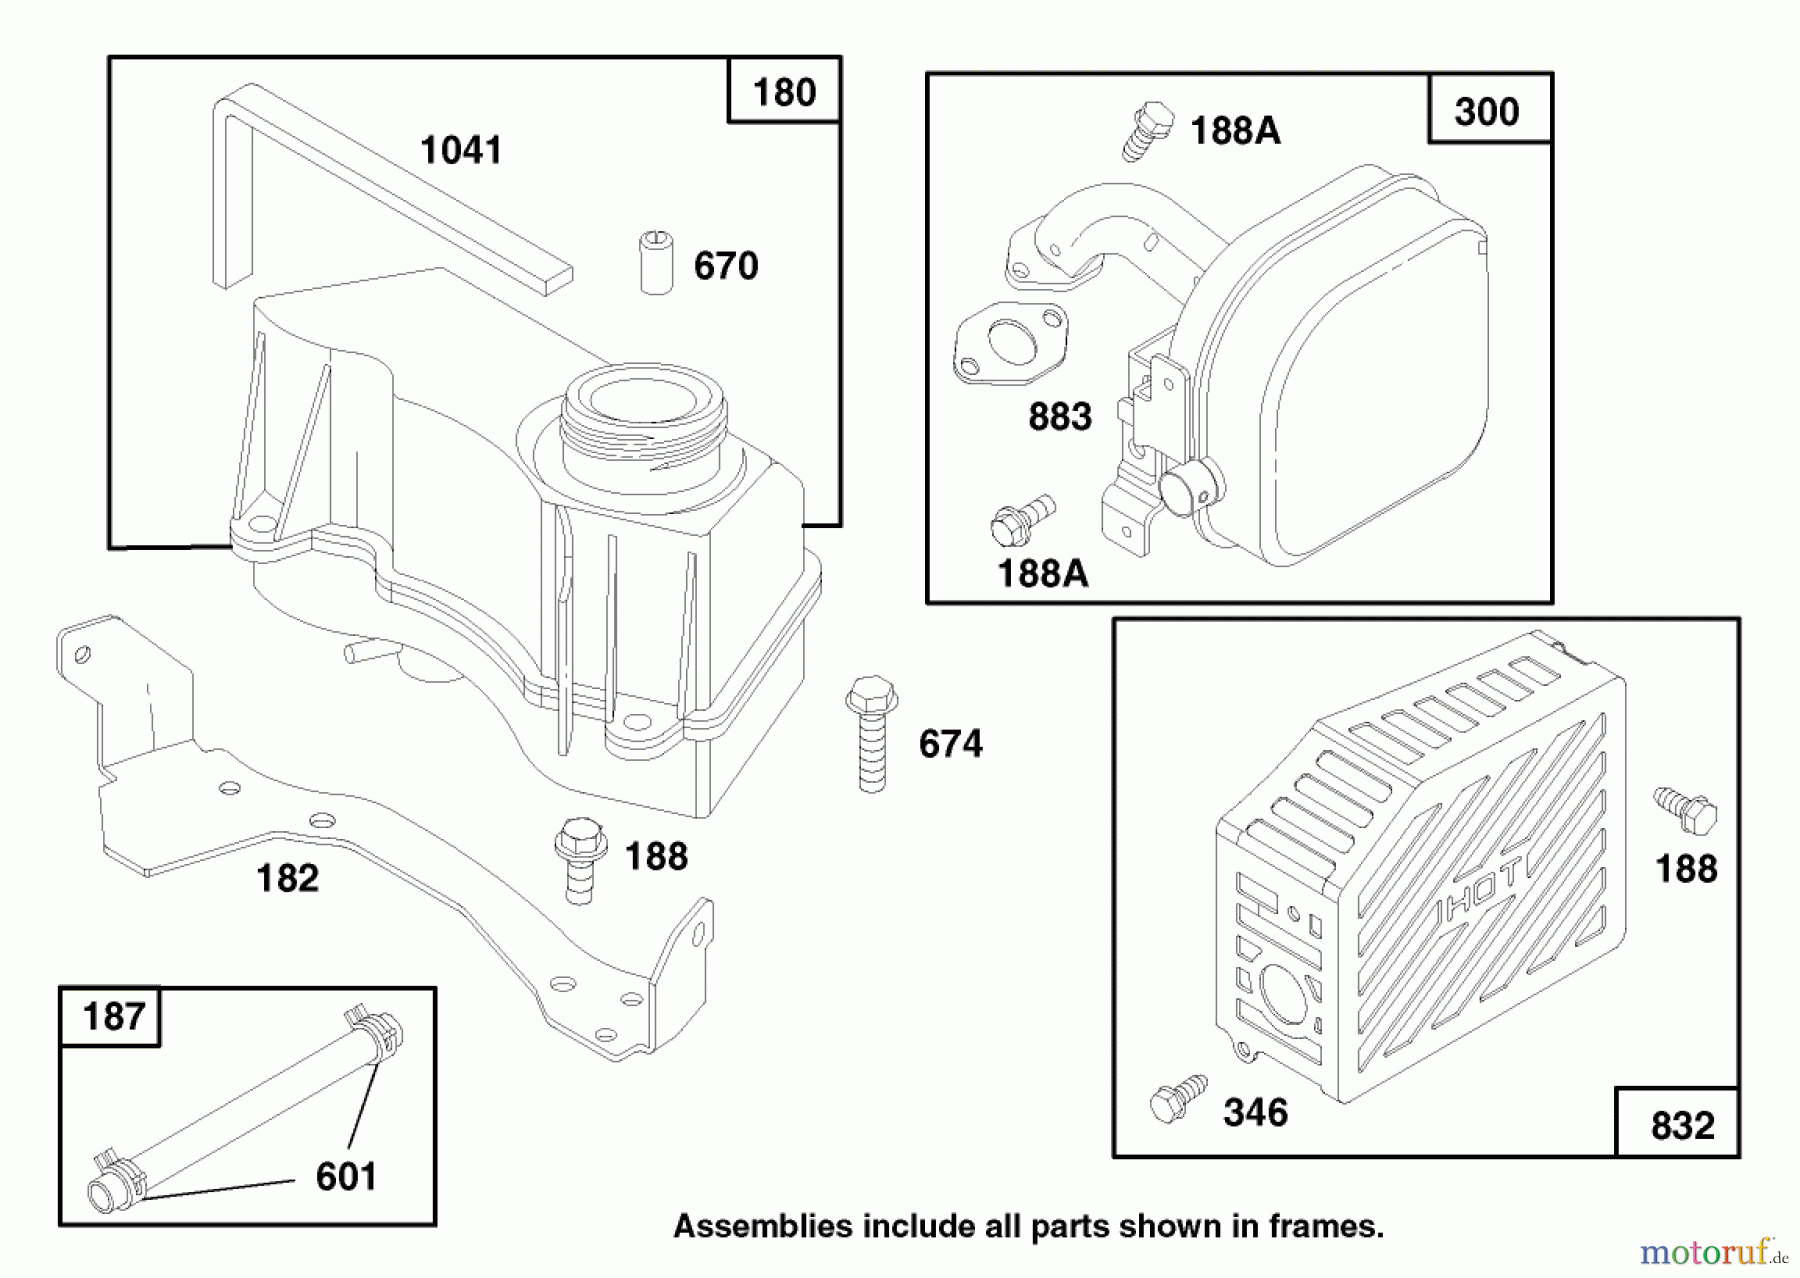  Toro Neu Mowers, Walk-Behind Seite 2 26632 - Toro Lawnmower, 1997 (7900001-7999999) ENGINE GTS 150 #7